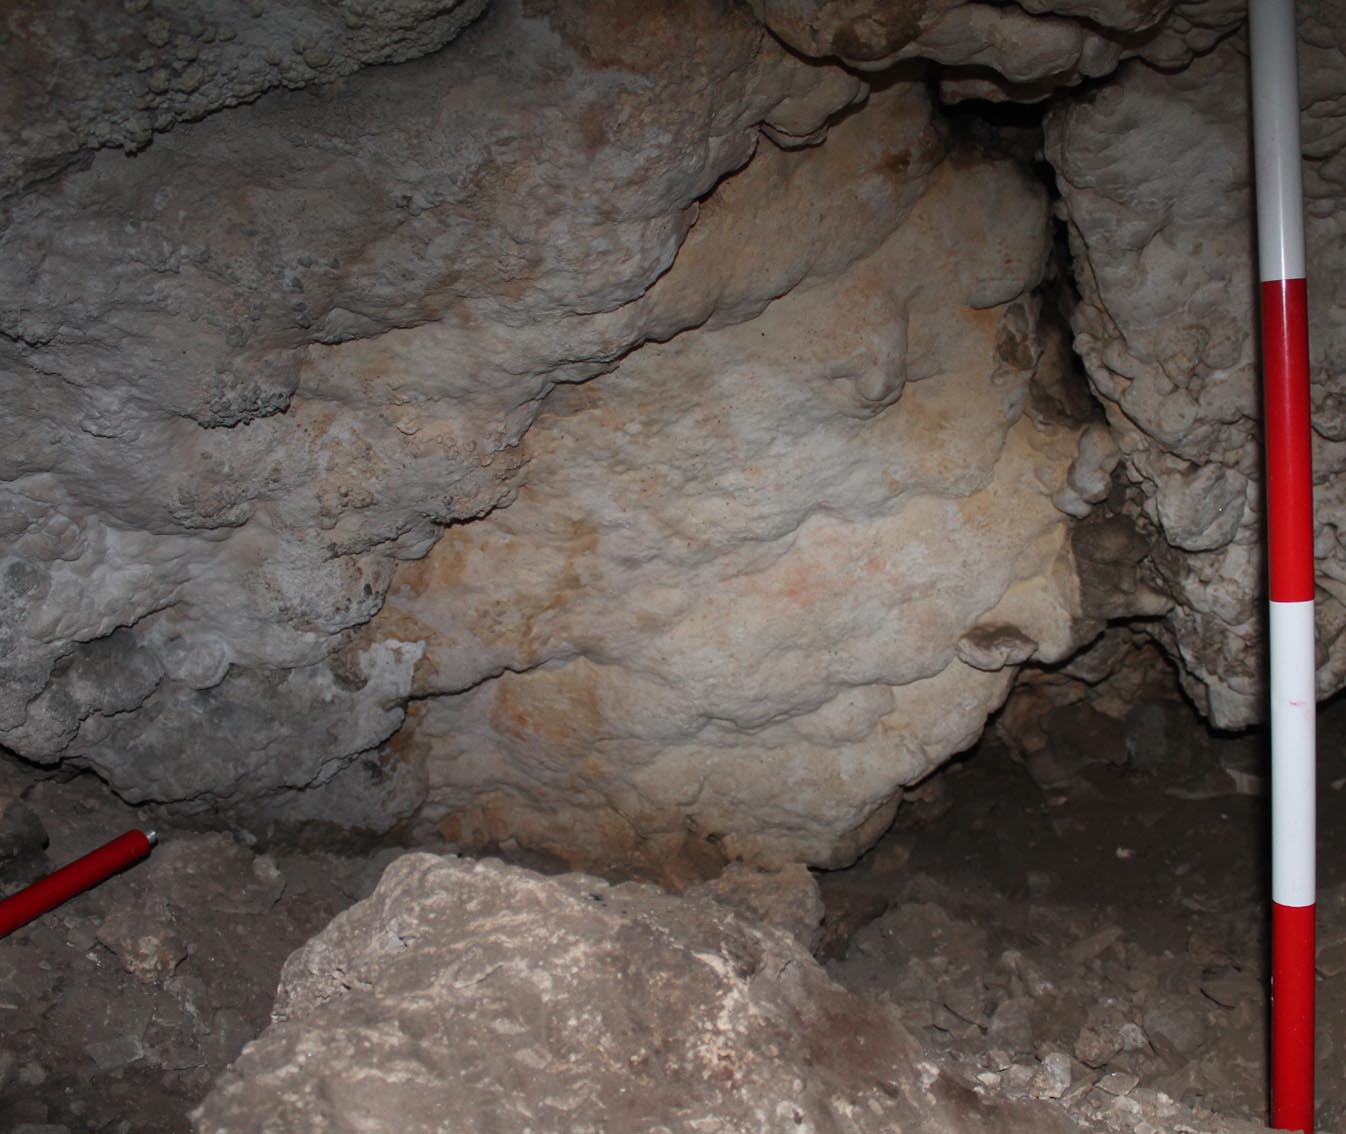 Escrupuloso Oeste Repulsión Nueva pintura rupestre en la Cueva de Nerja: un descubrimiento en pigmento  rojo y con forma animal - Cueva de Nerja